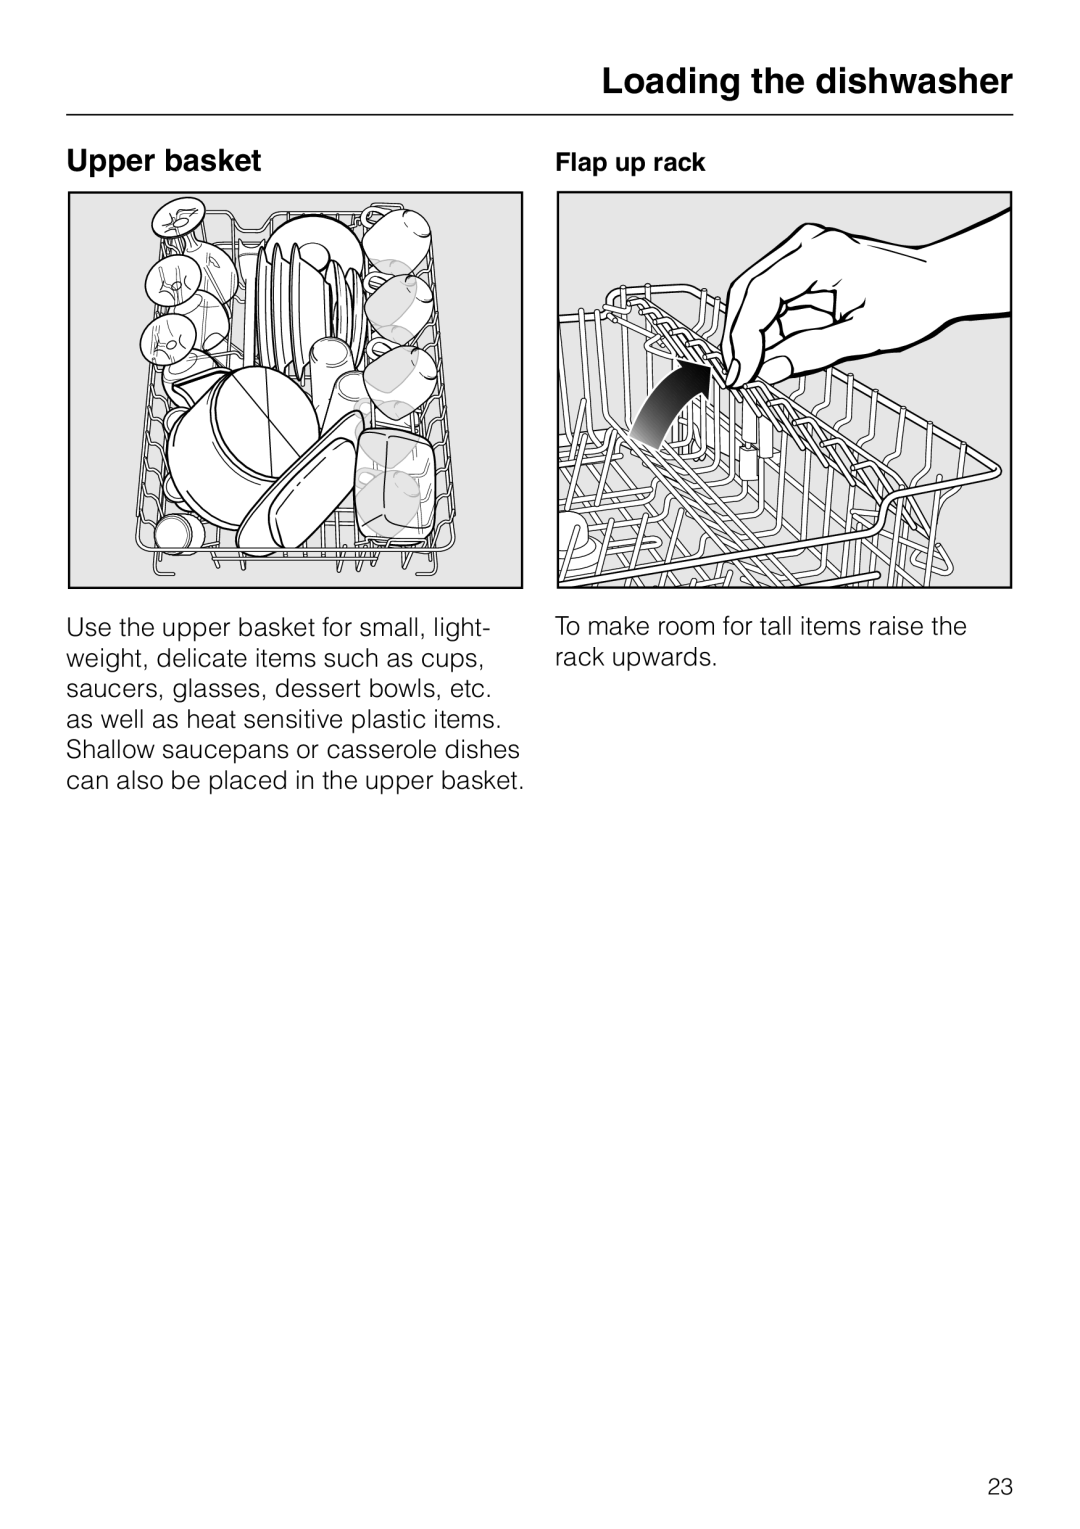 Miele dishwashers installation instructions Upper basket, Flap up rack, Loading the dishwasher 